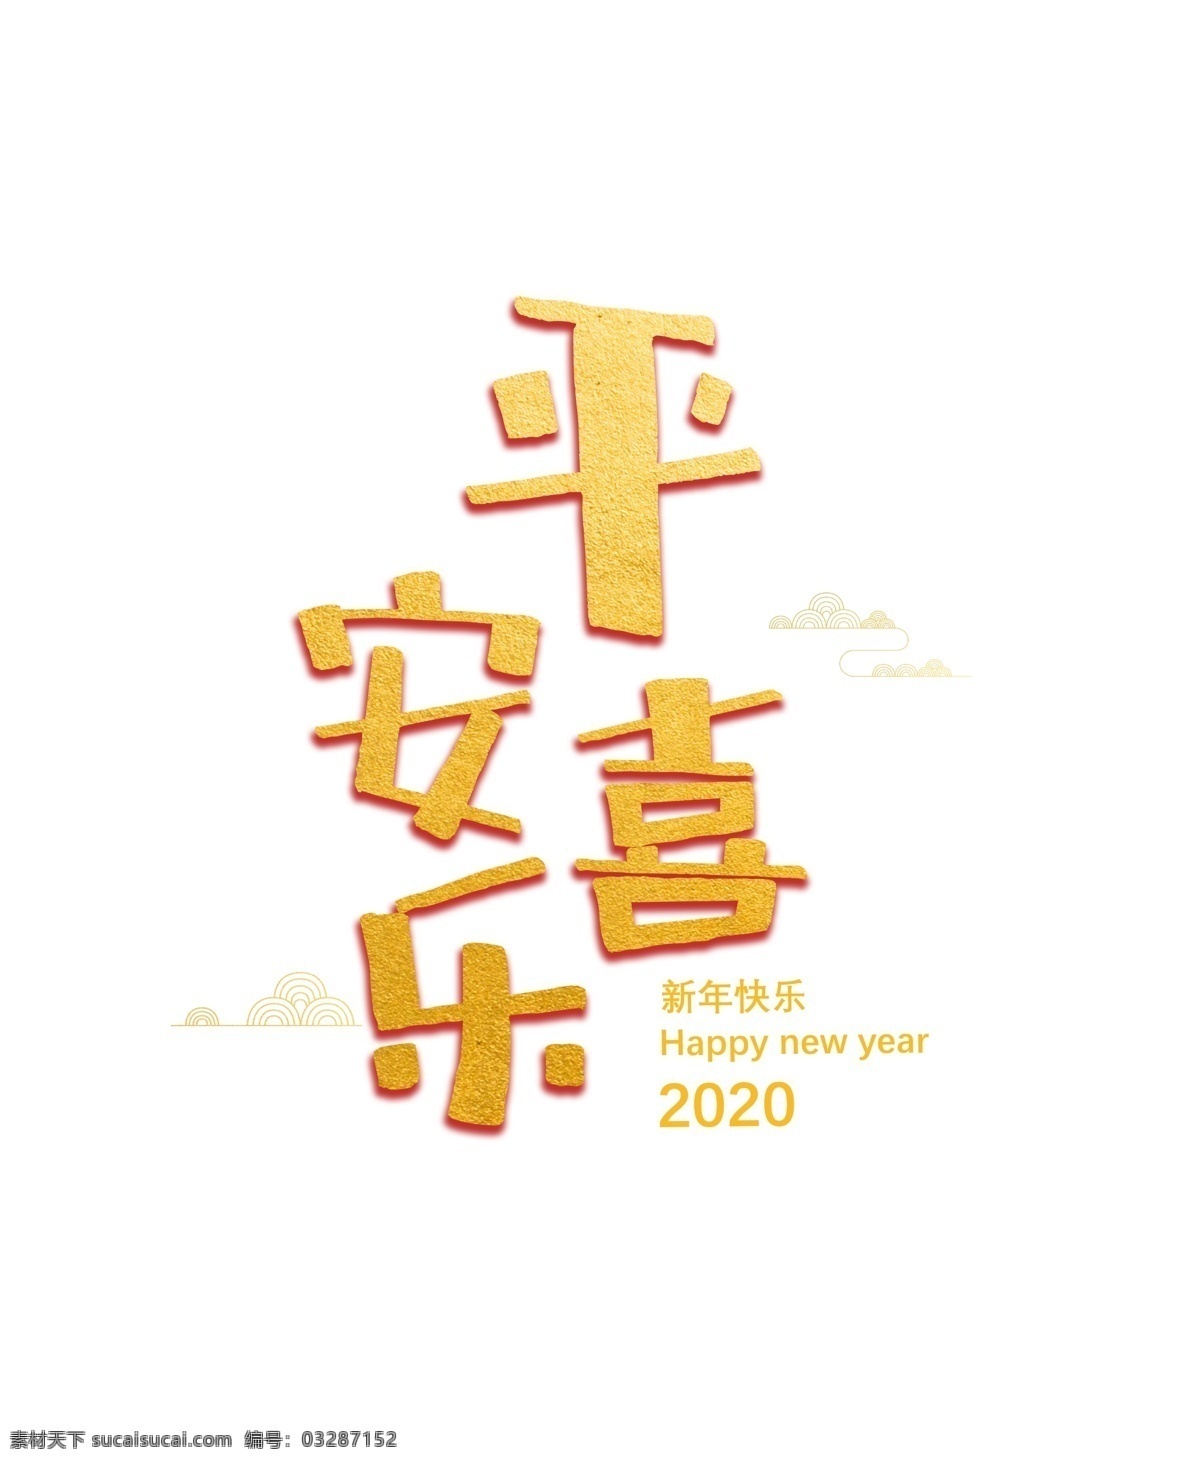 平安喜乐 鼠年字体 鼠年字体设计 鼠年金色字体 新年字体 元旦字体 春节字体 透明鼠年字体 透明春节字体 鼠年 字体 创意鼠年字体 2020字体 2020 透明 创意 恭喜发财字体 祝 大家 新年 快乐